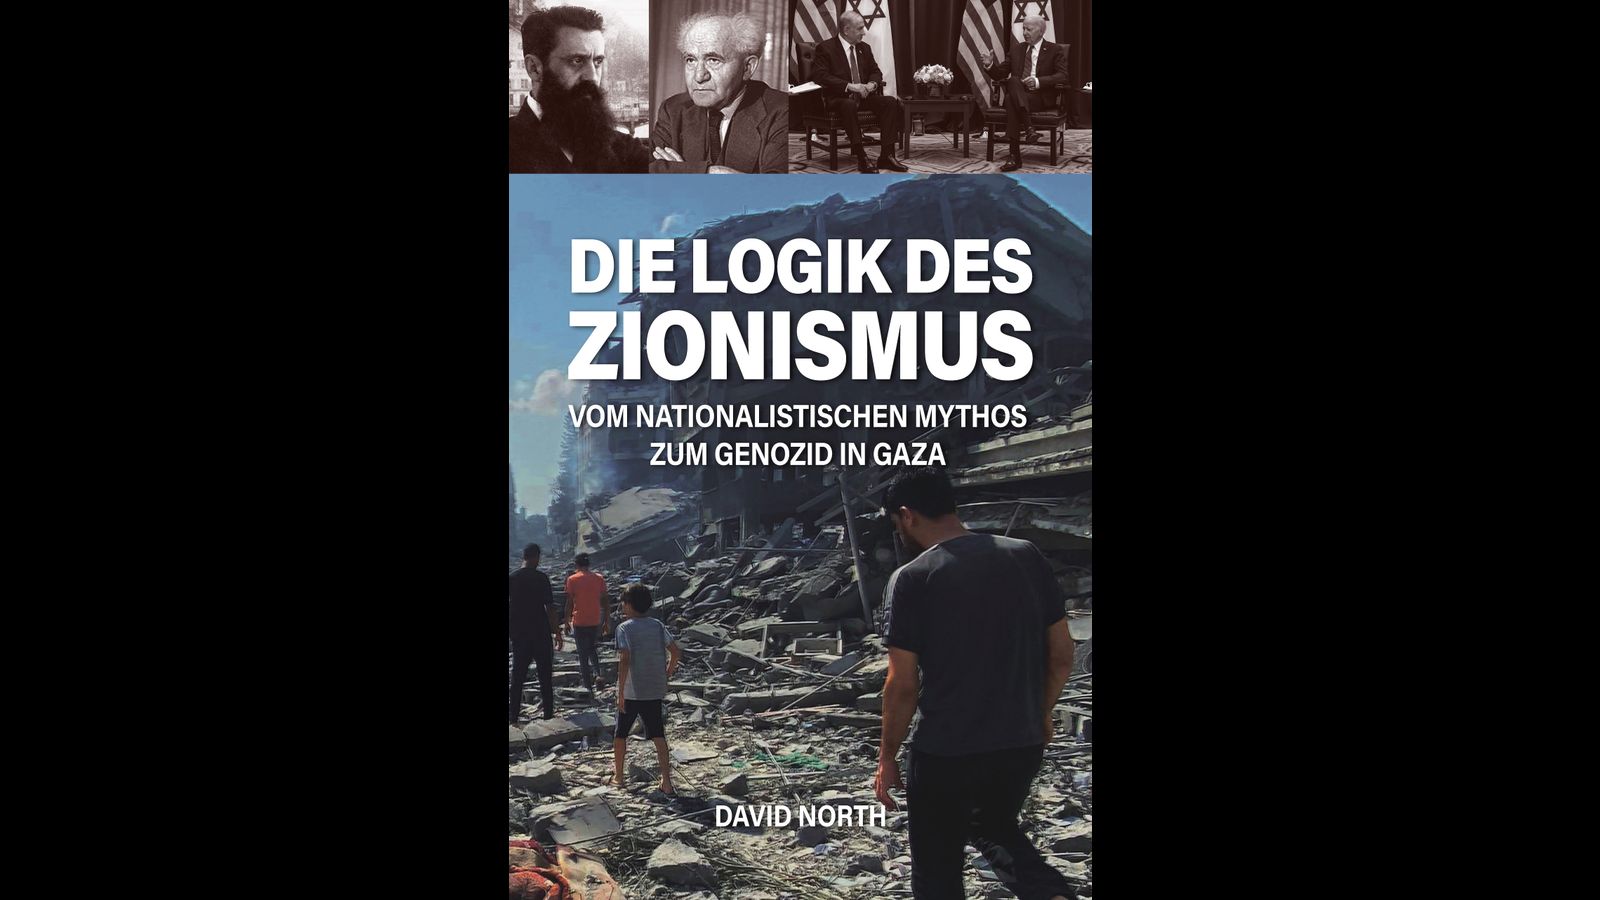 David-Norths-Buch-Die-Logik-des-Zionismus-Vom-nationalistischen-Mythos-zum-Genozid-in-Gaza-zeigt-die-katastrophalen-Folgen-nationalistischer-Politik